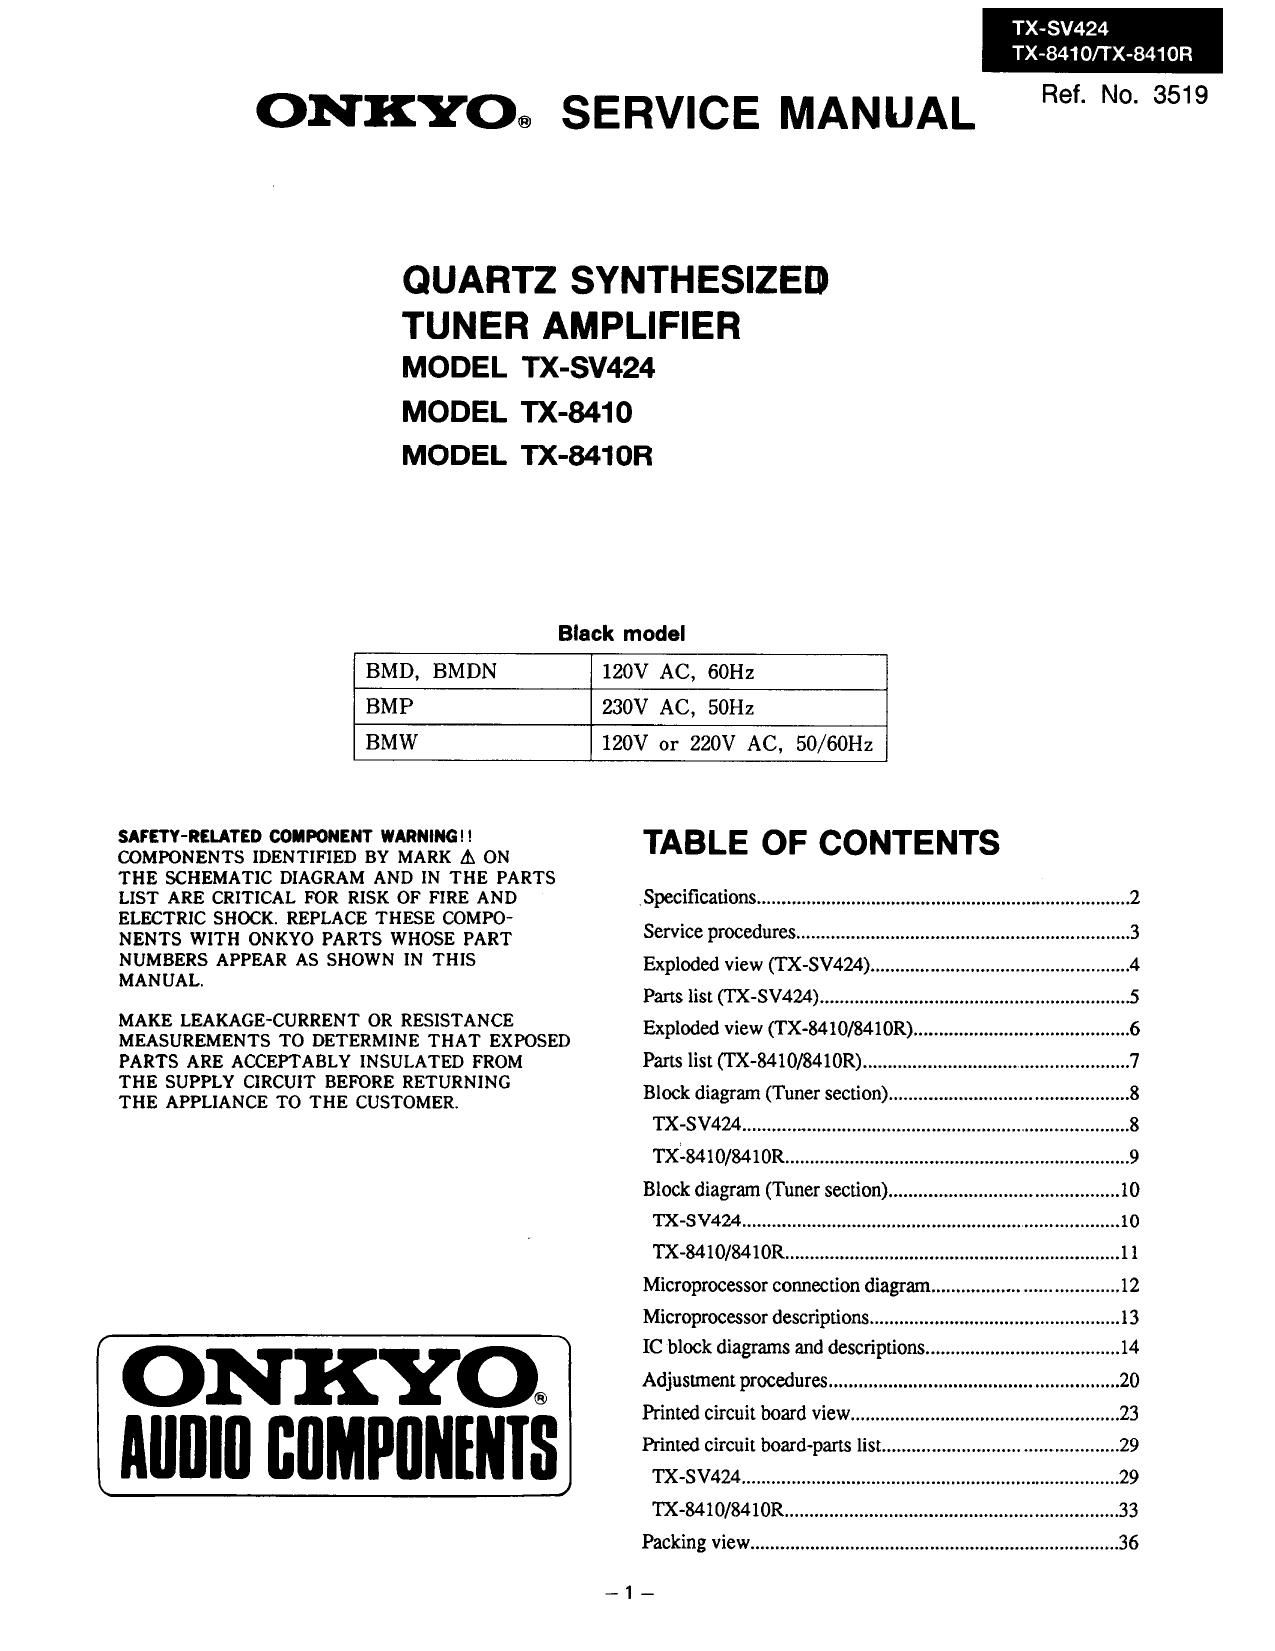 Onkyo TXSV 424 Service Manual